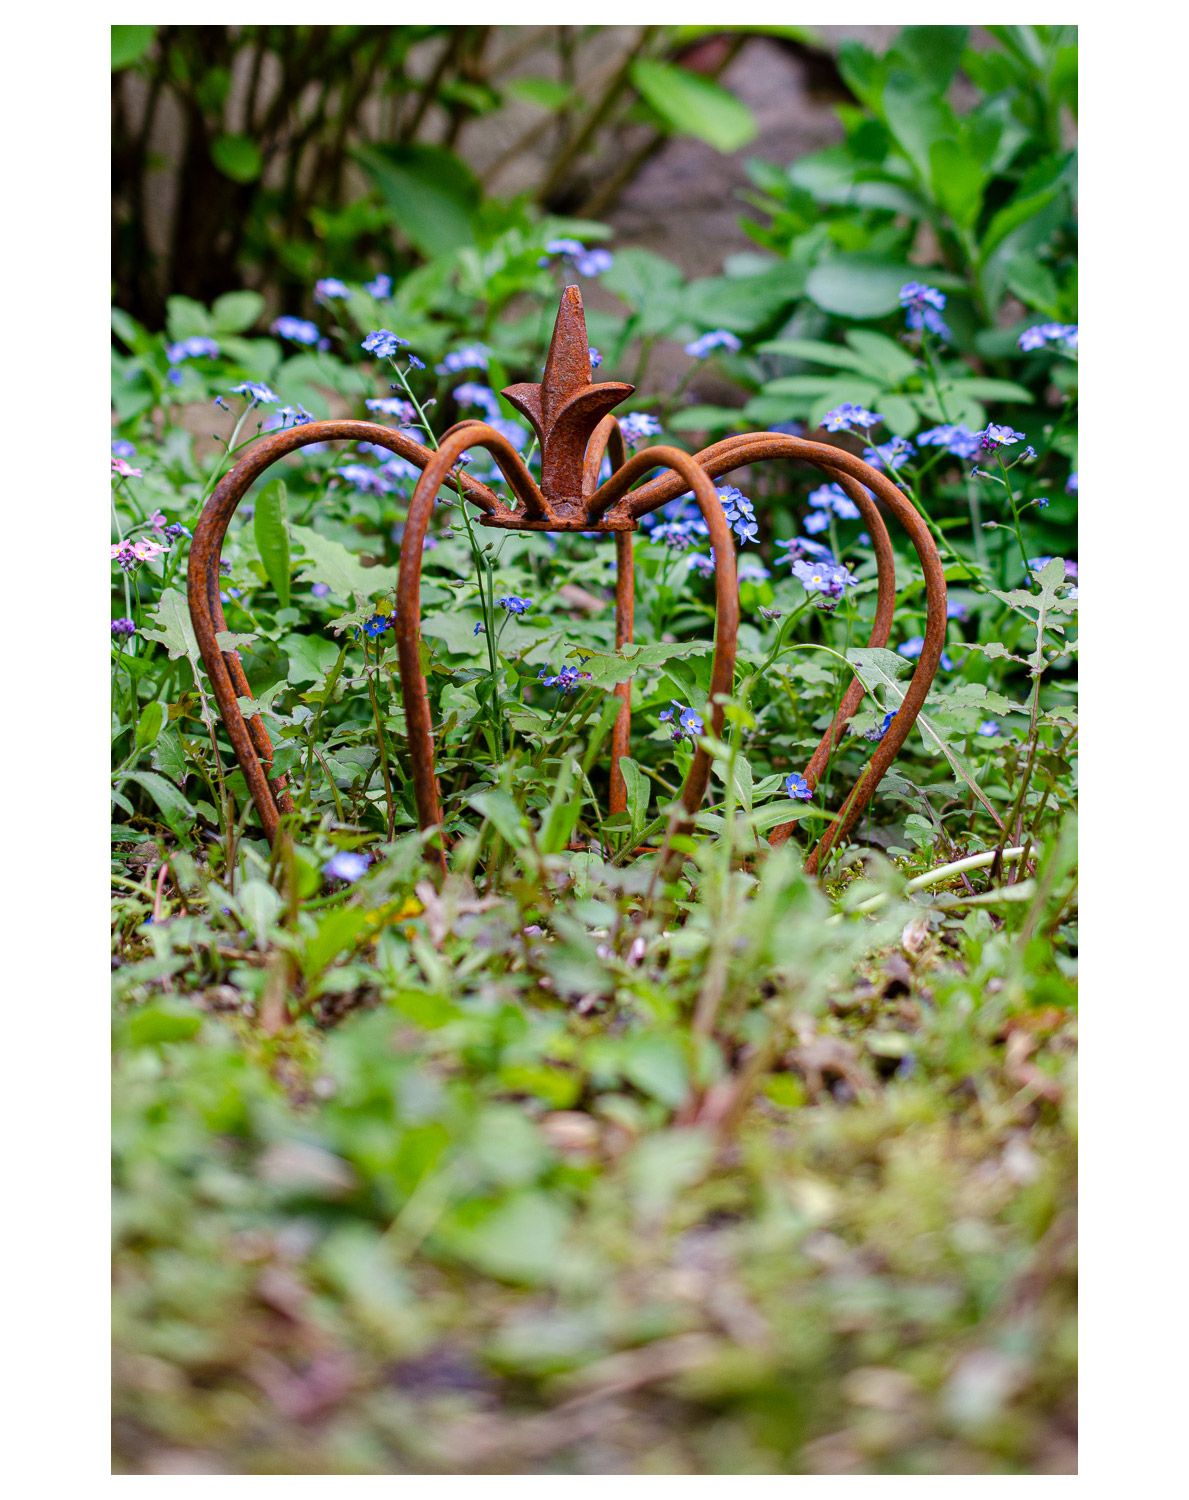 Gartendeko Antik Inspirierend Crown Iron Lily Garden Decoration Rust Antique Style 24cm